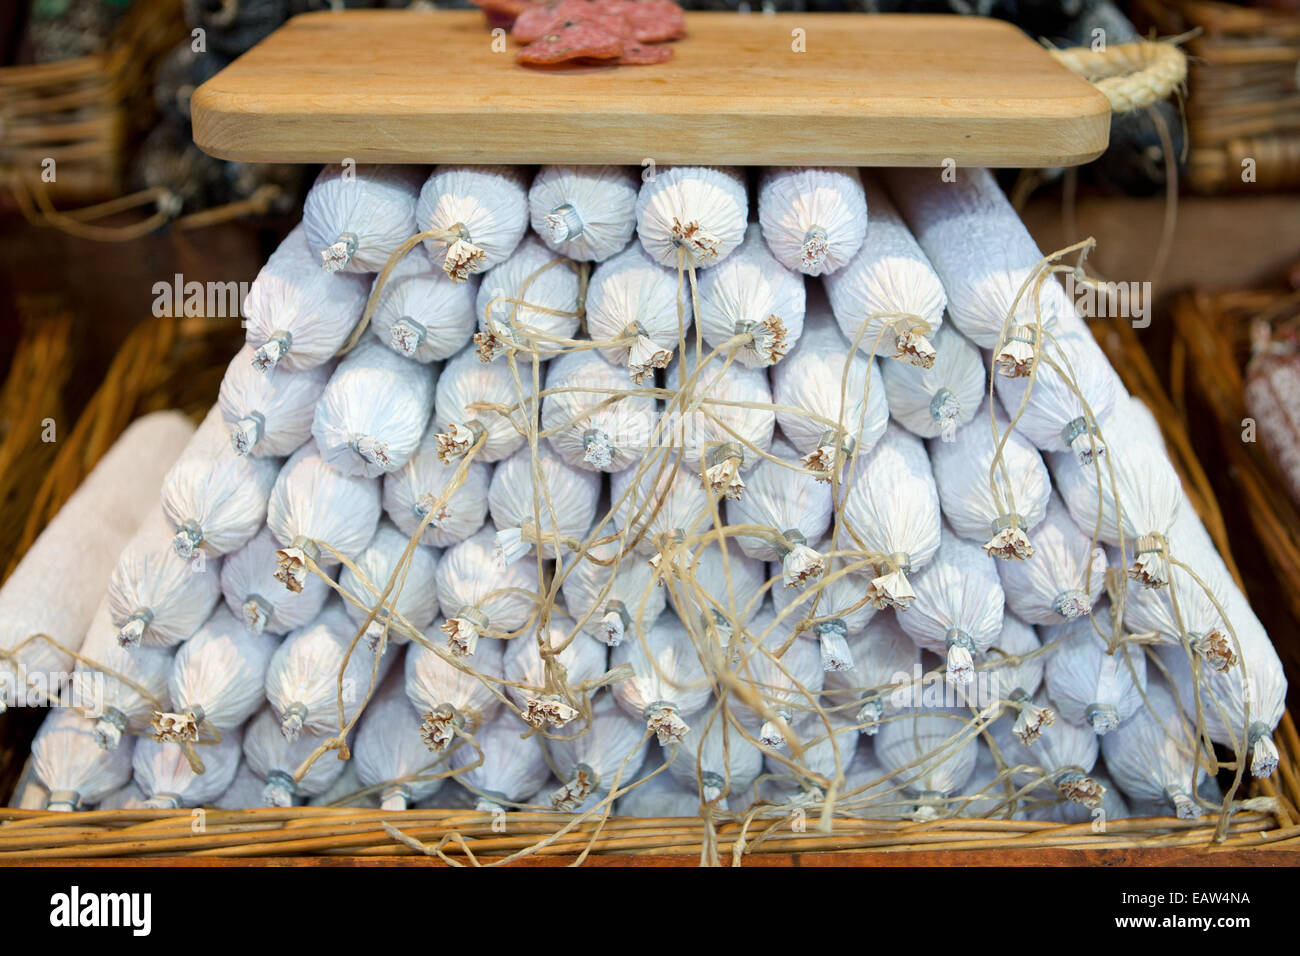 Weihnachten kontinentalen Markt Belfast UK. 17. November 2014. White Salami auf Markt. Mit Schnur gebunden. Stockfoto